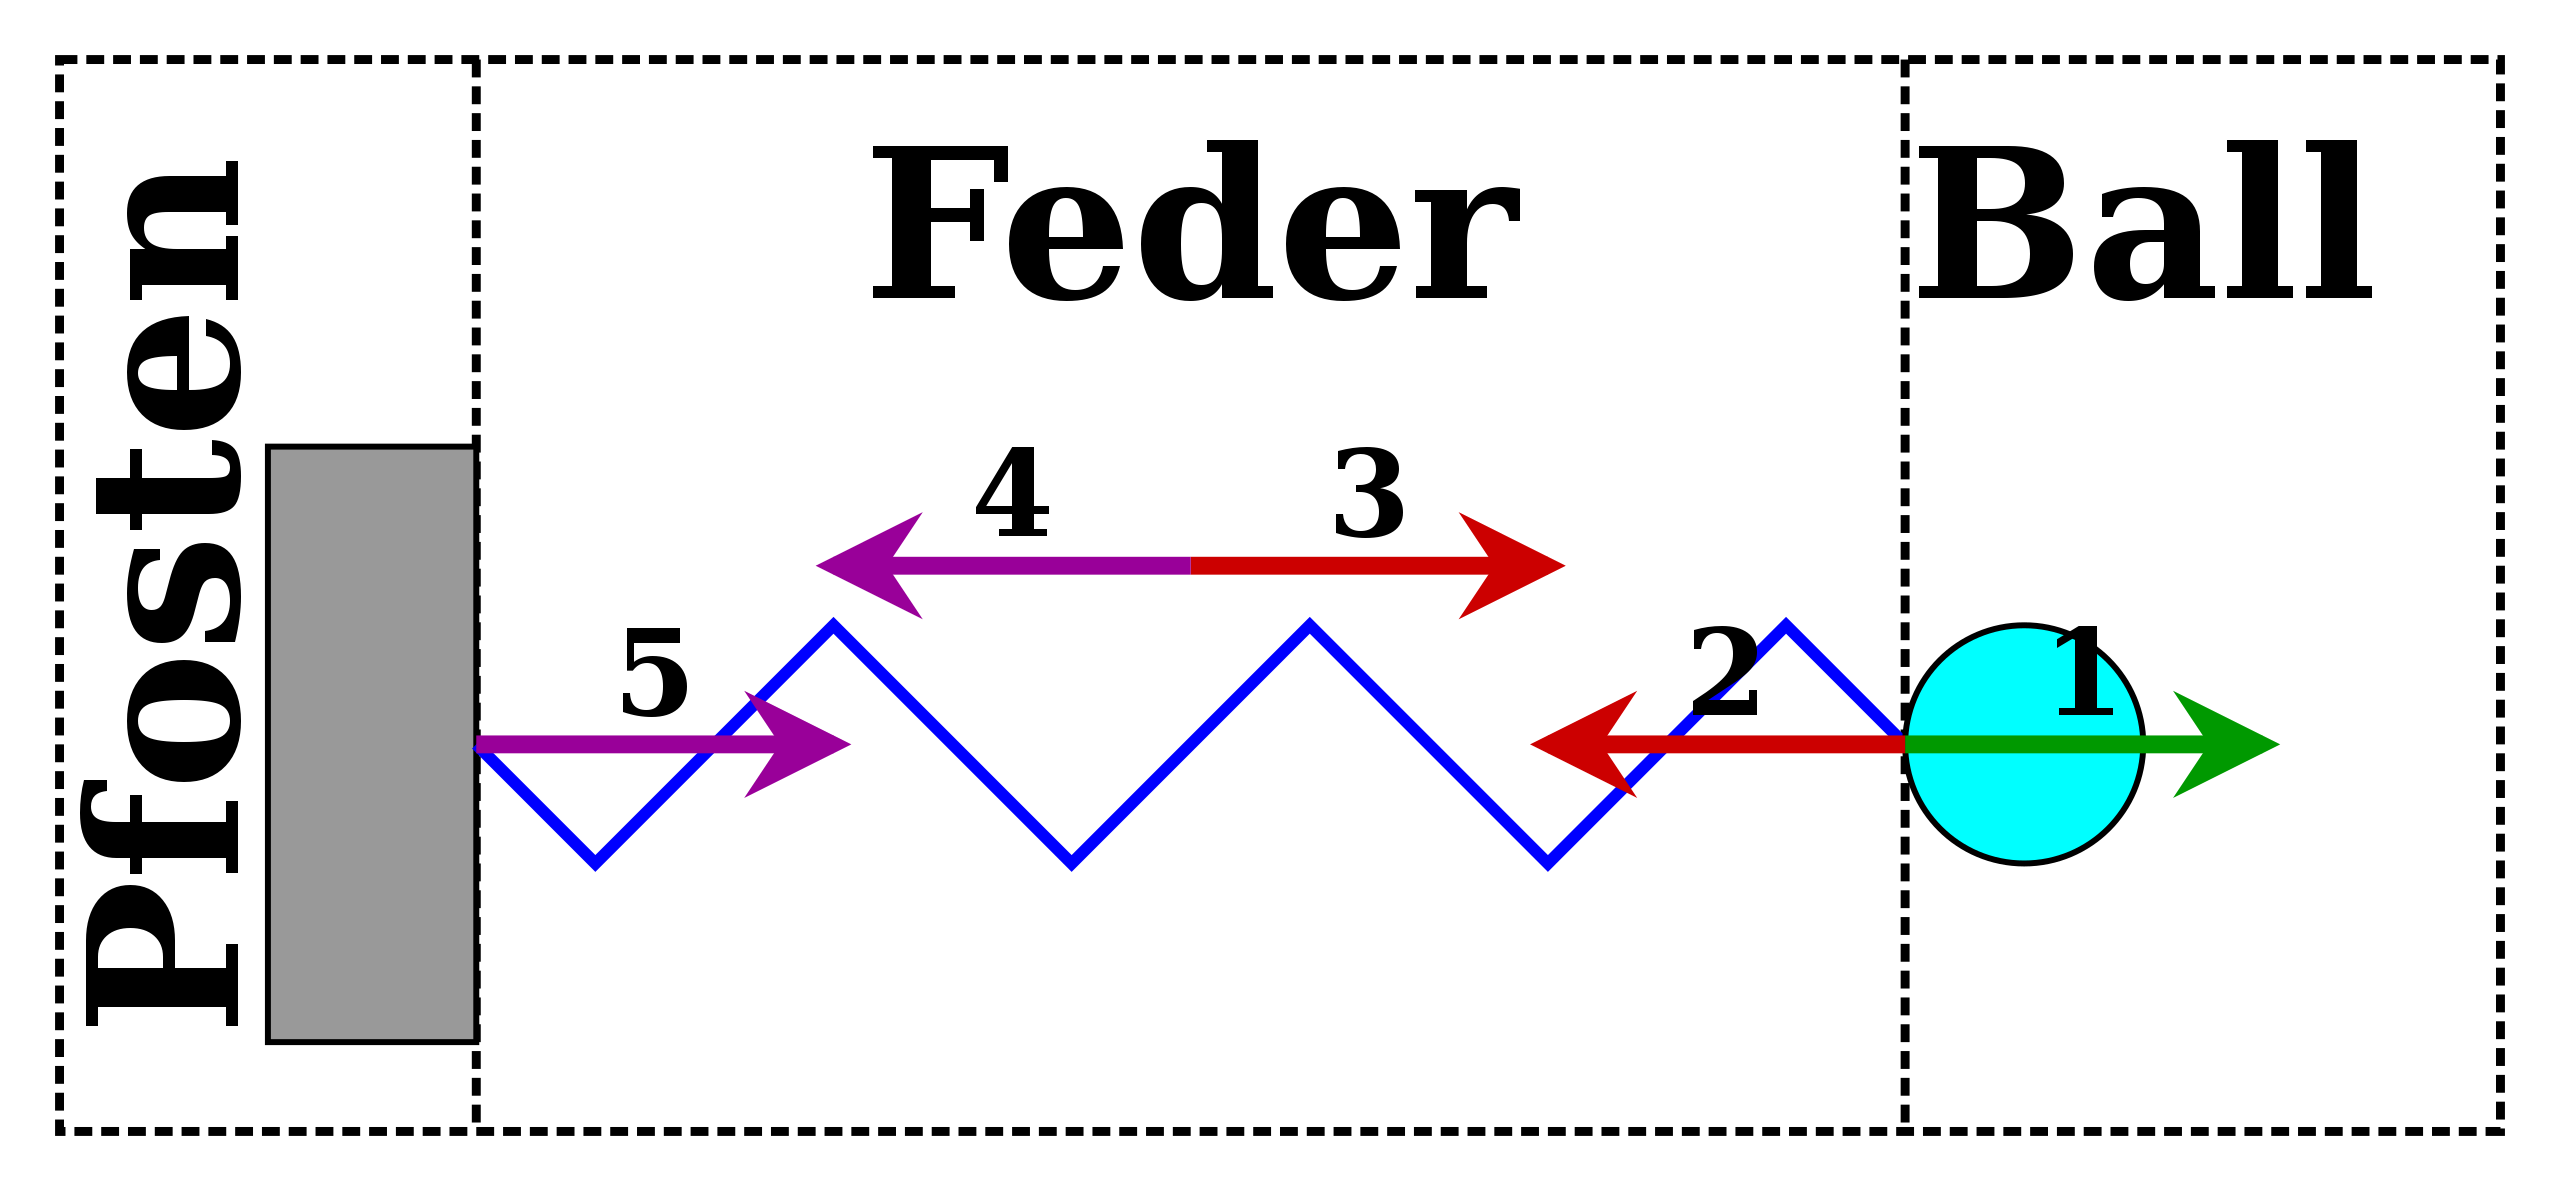 Feder – Wikipedia